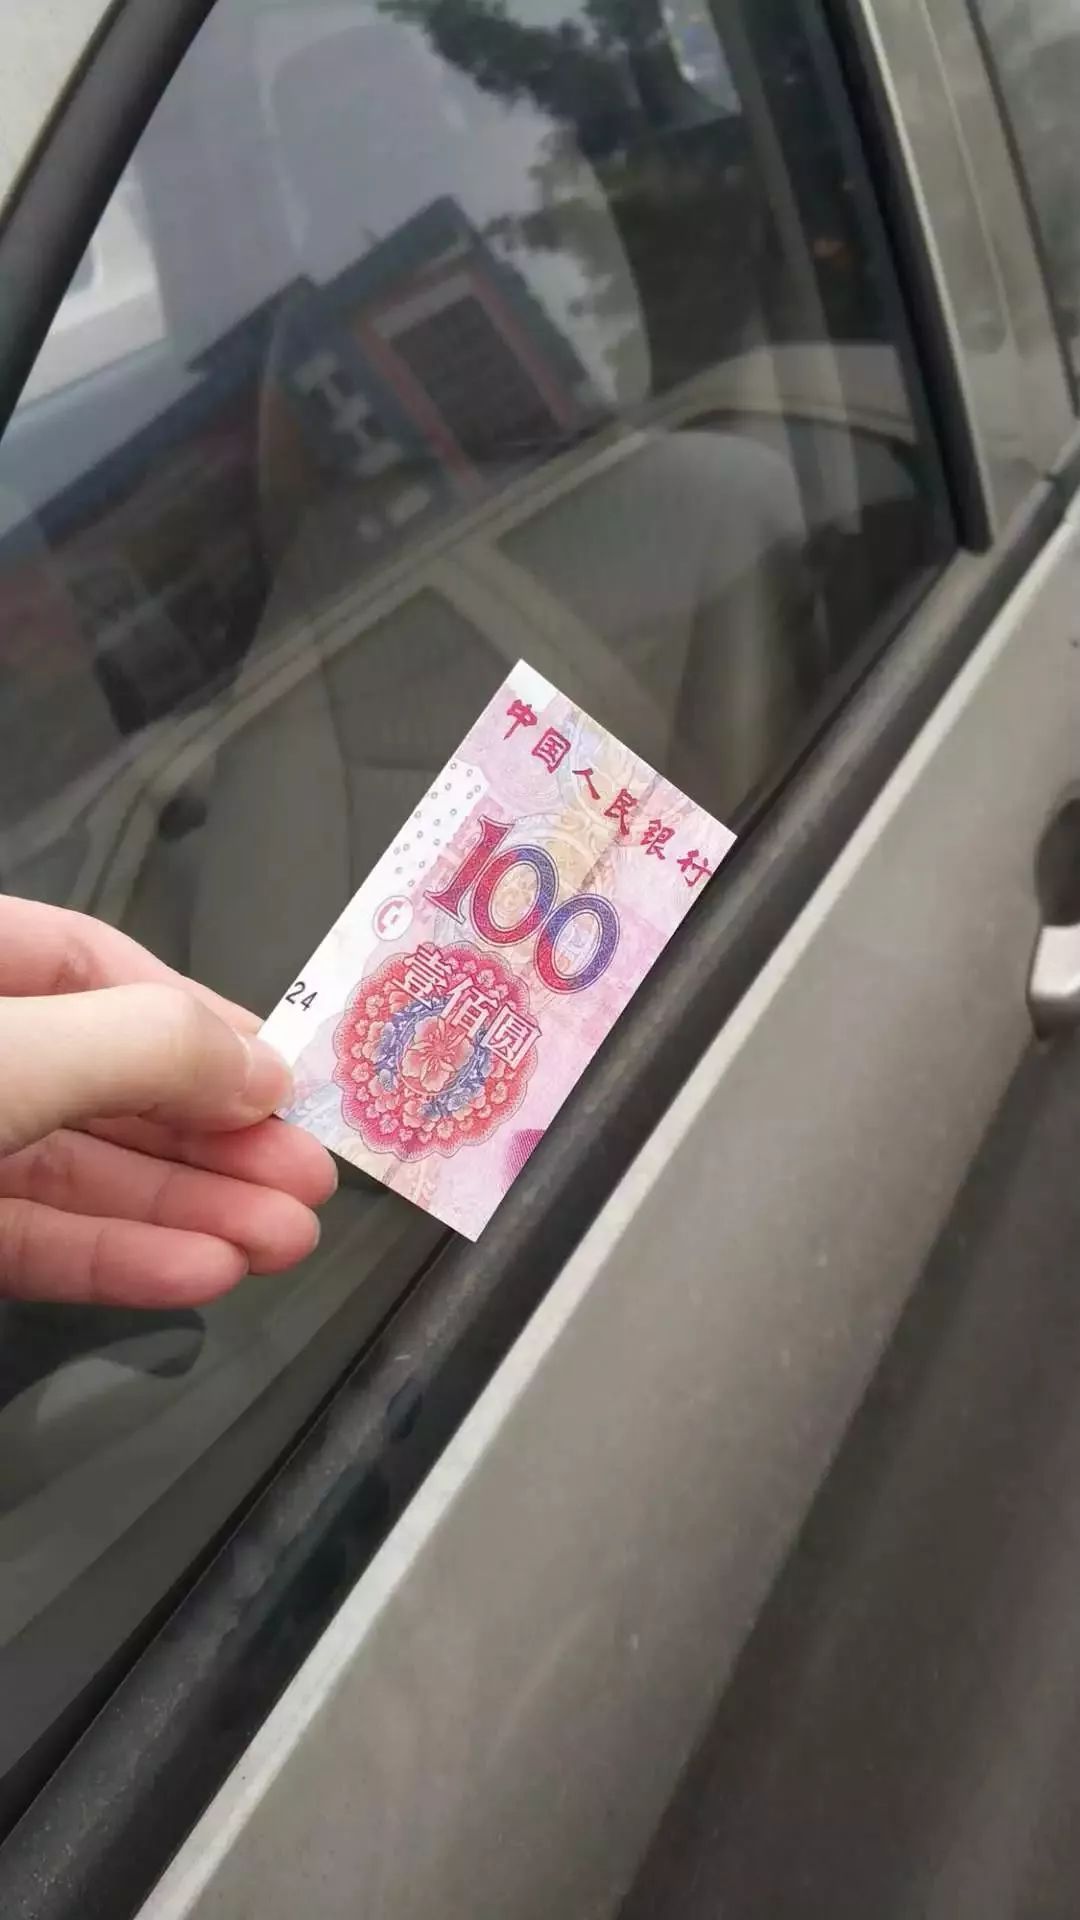 【震惊】新会多辆小车收到"100元人民币,玩咁大?